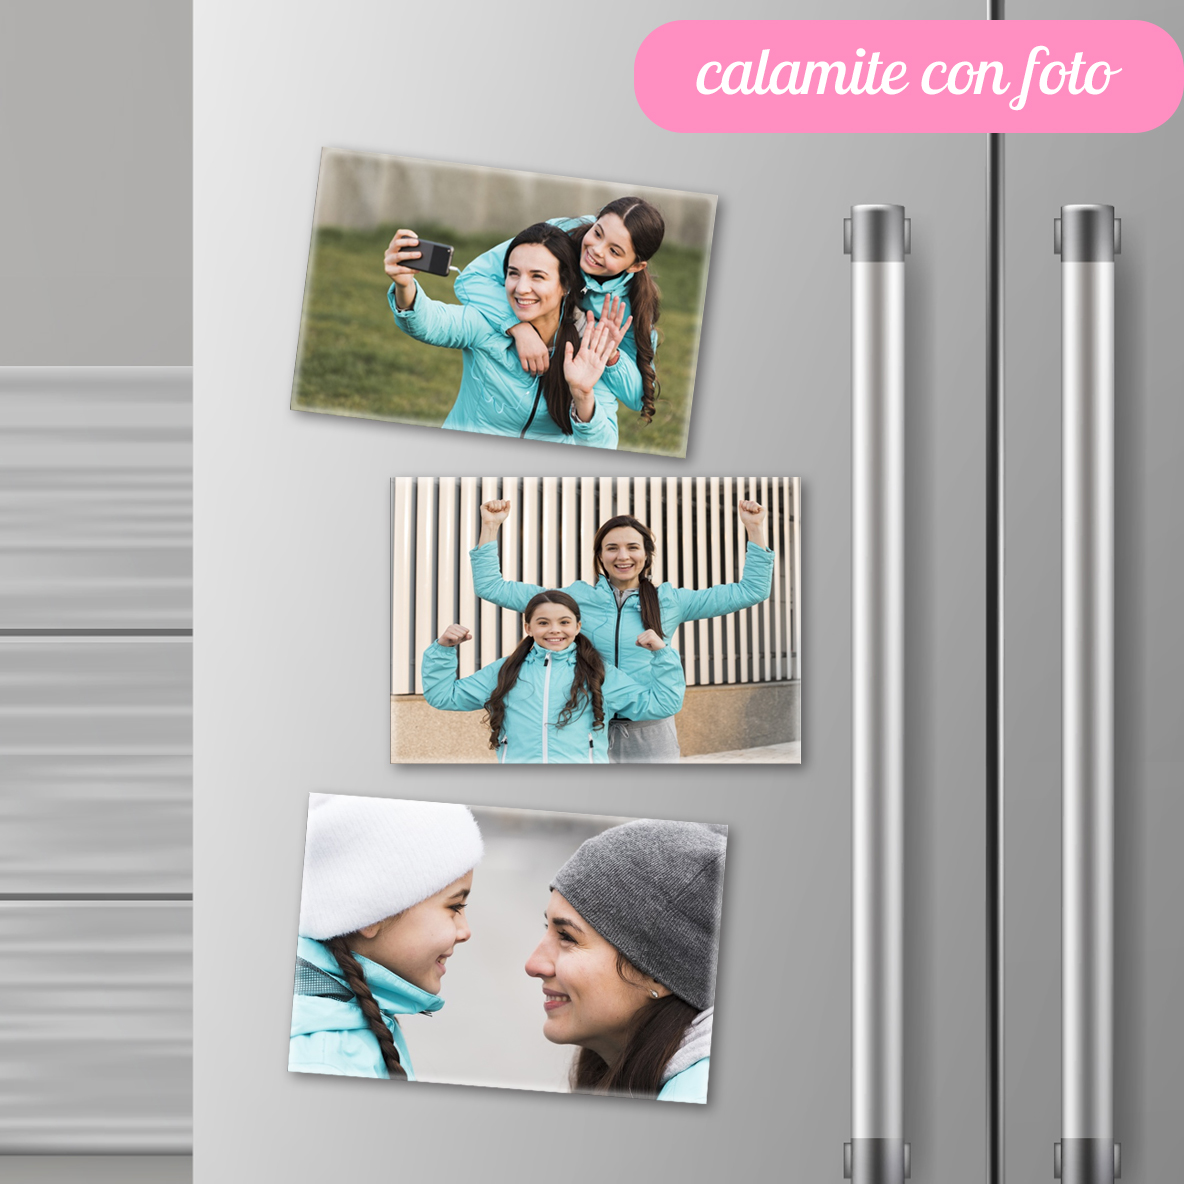 Fotoaroma Calamita con foto personalizzata/magneti flessibili personalizzati,  dimensioni 5 x 7 cm, confezione da 30 magneti : : Casa e cucina